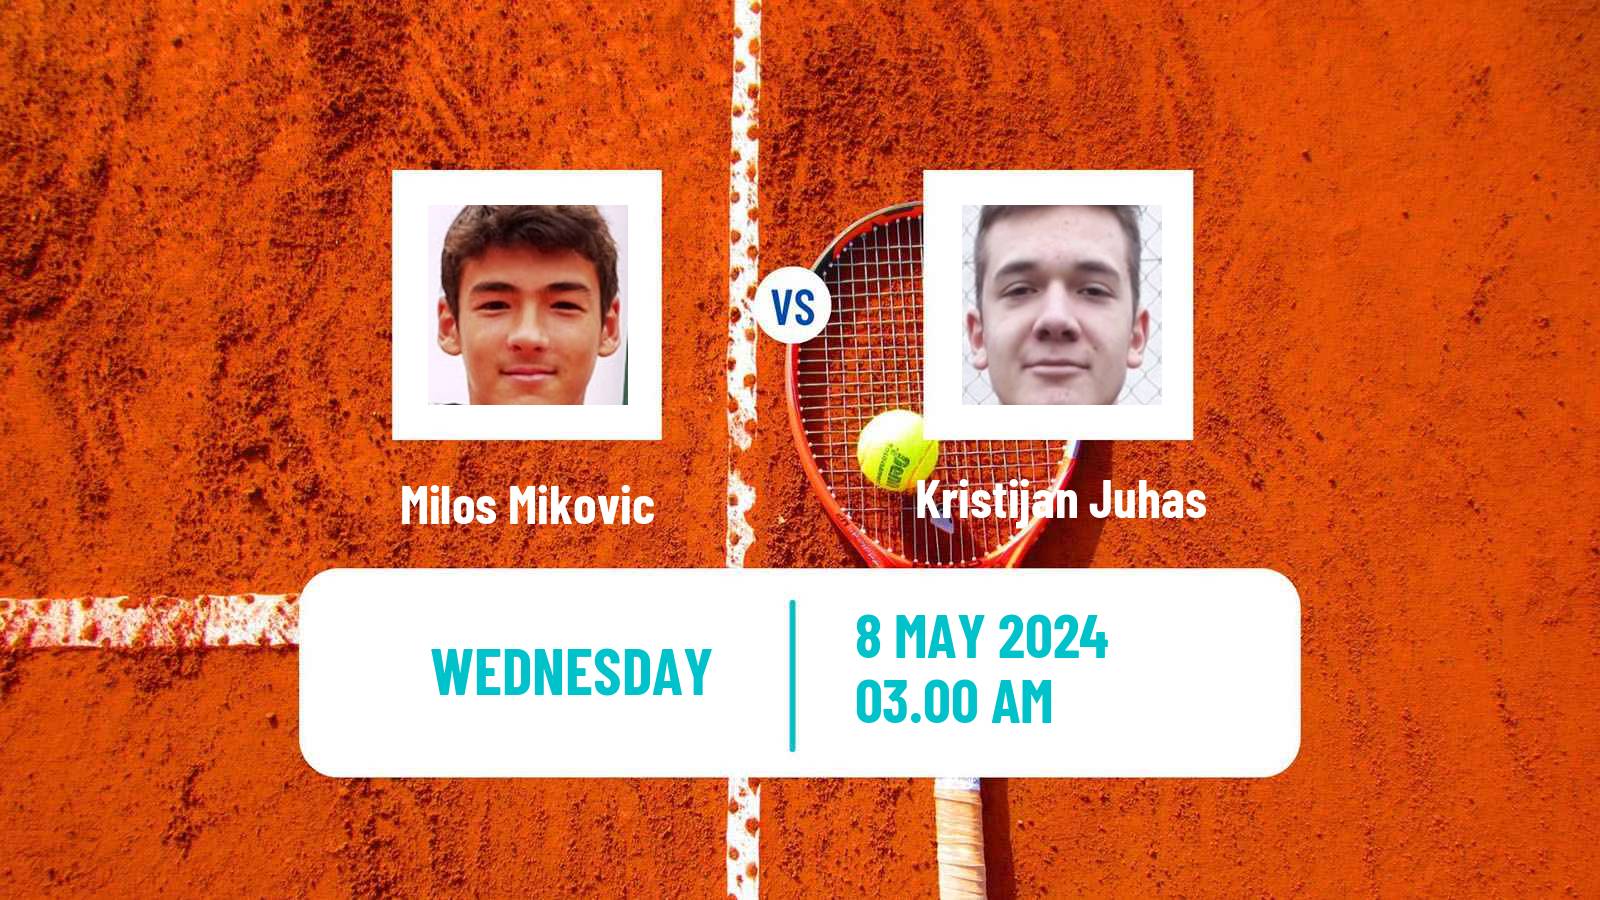 Tennis ITF M25 Kursumlijska Banja Men Milos Mikovic - Kristijan Juhas